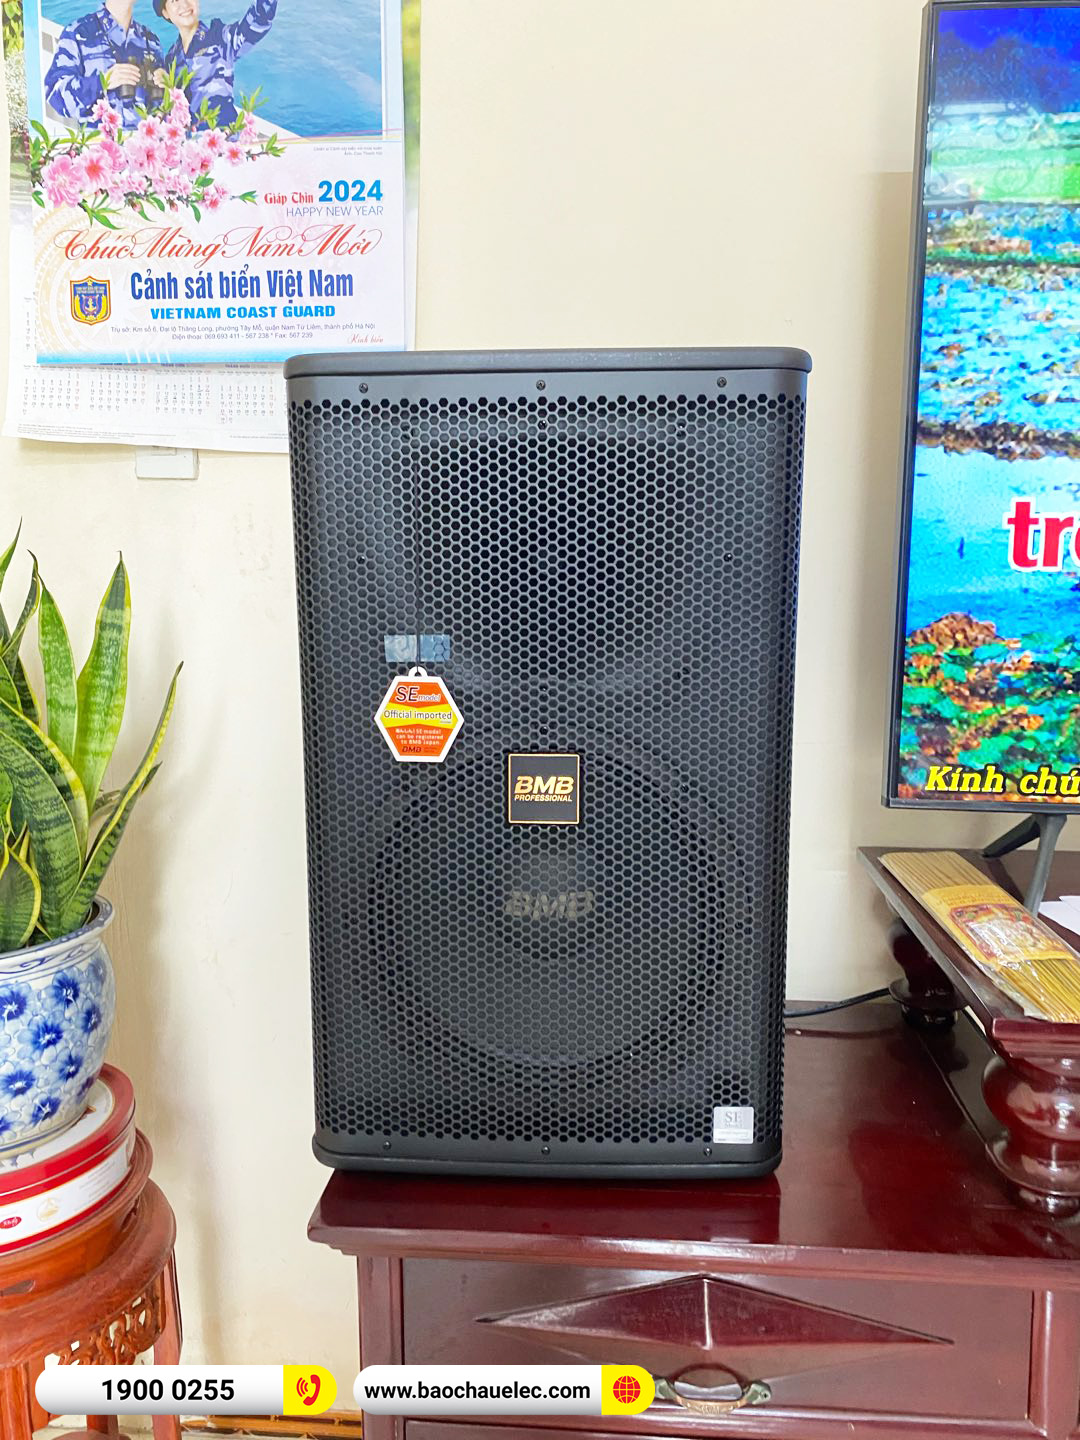 Lắp đặt dàn karaoke BMB hơn 58tr cho chú Duân tại Thái Bình (BMB 1212SE, DAD 950, KSP50) 